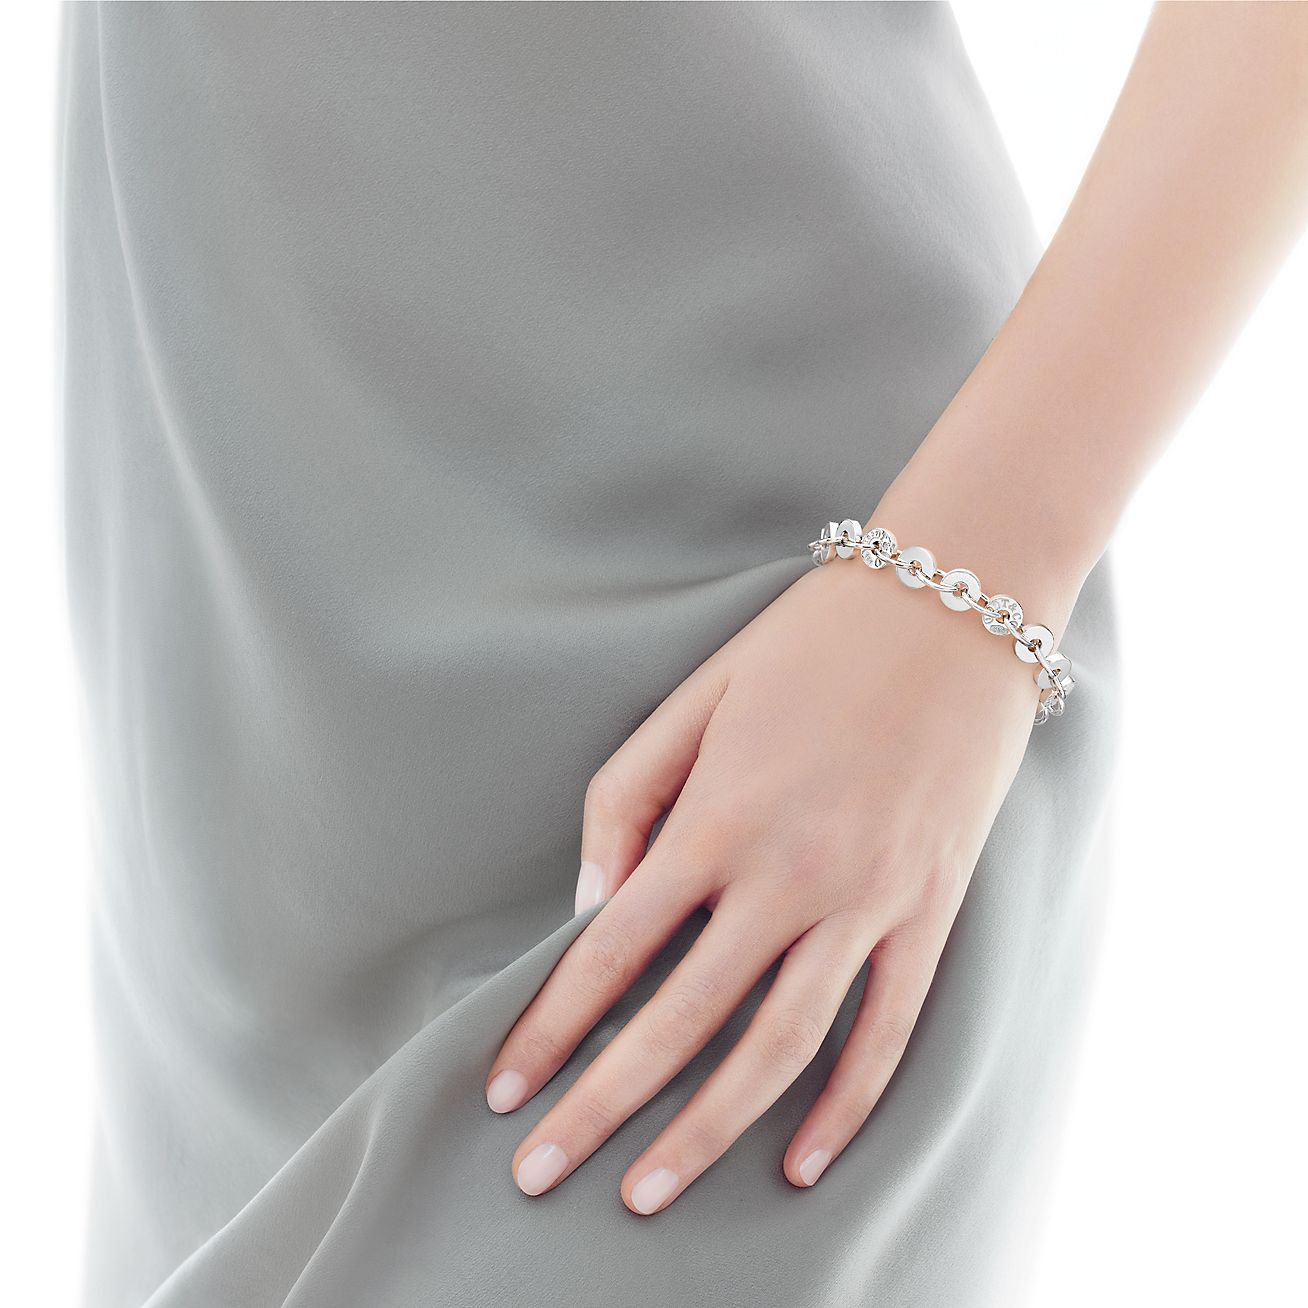 Tiffany 1837® circle bracelet in 